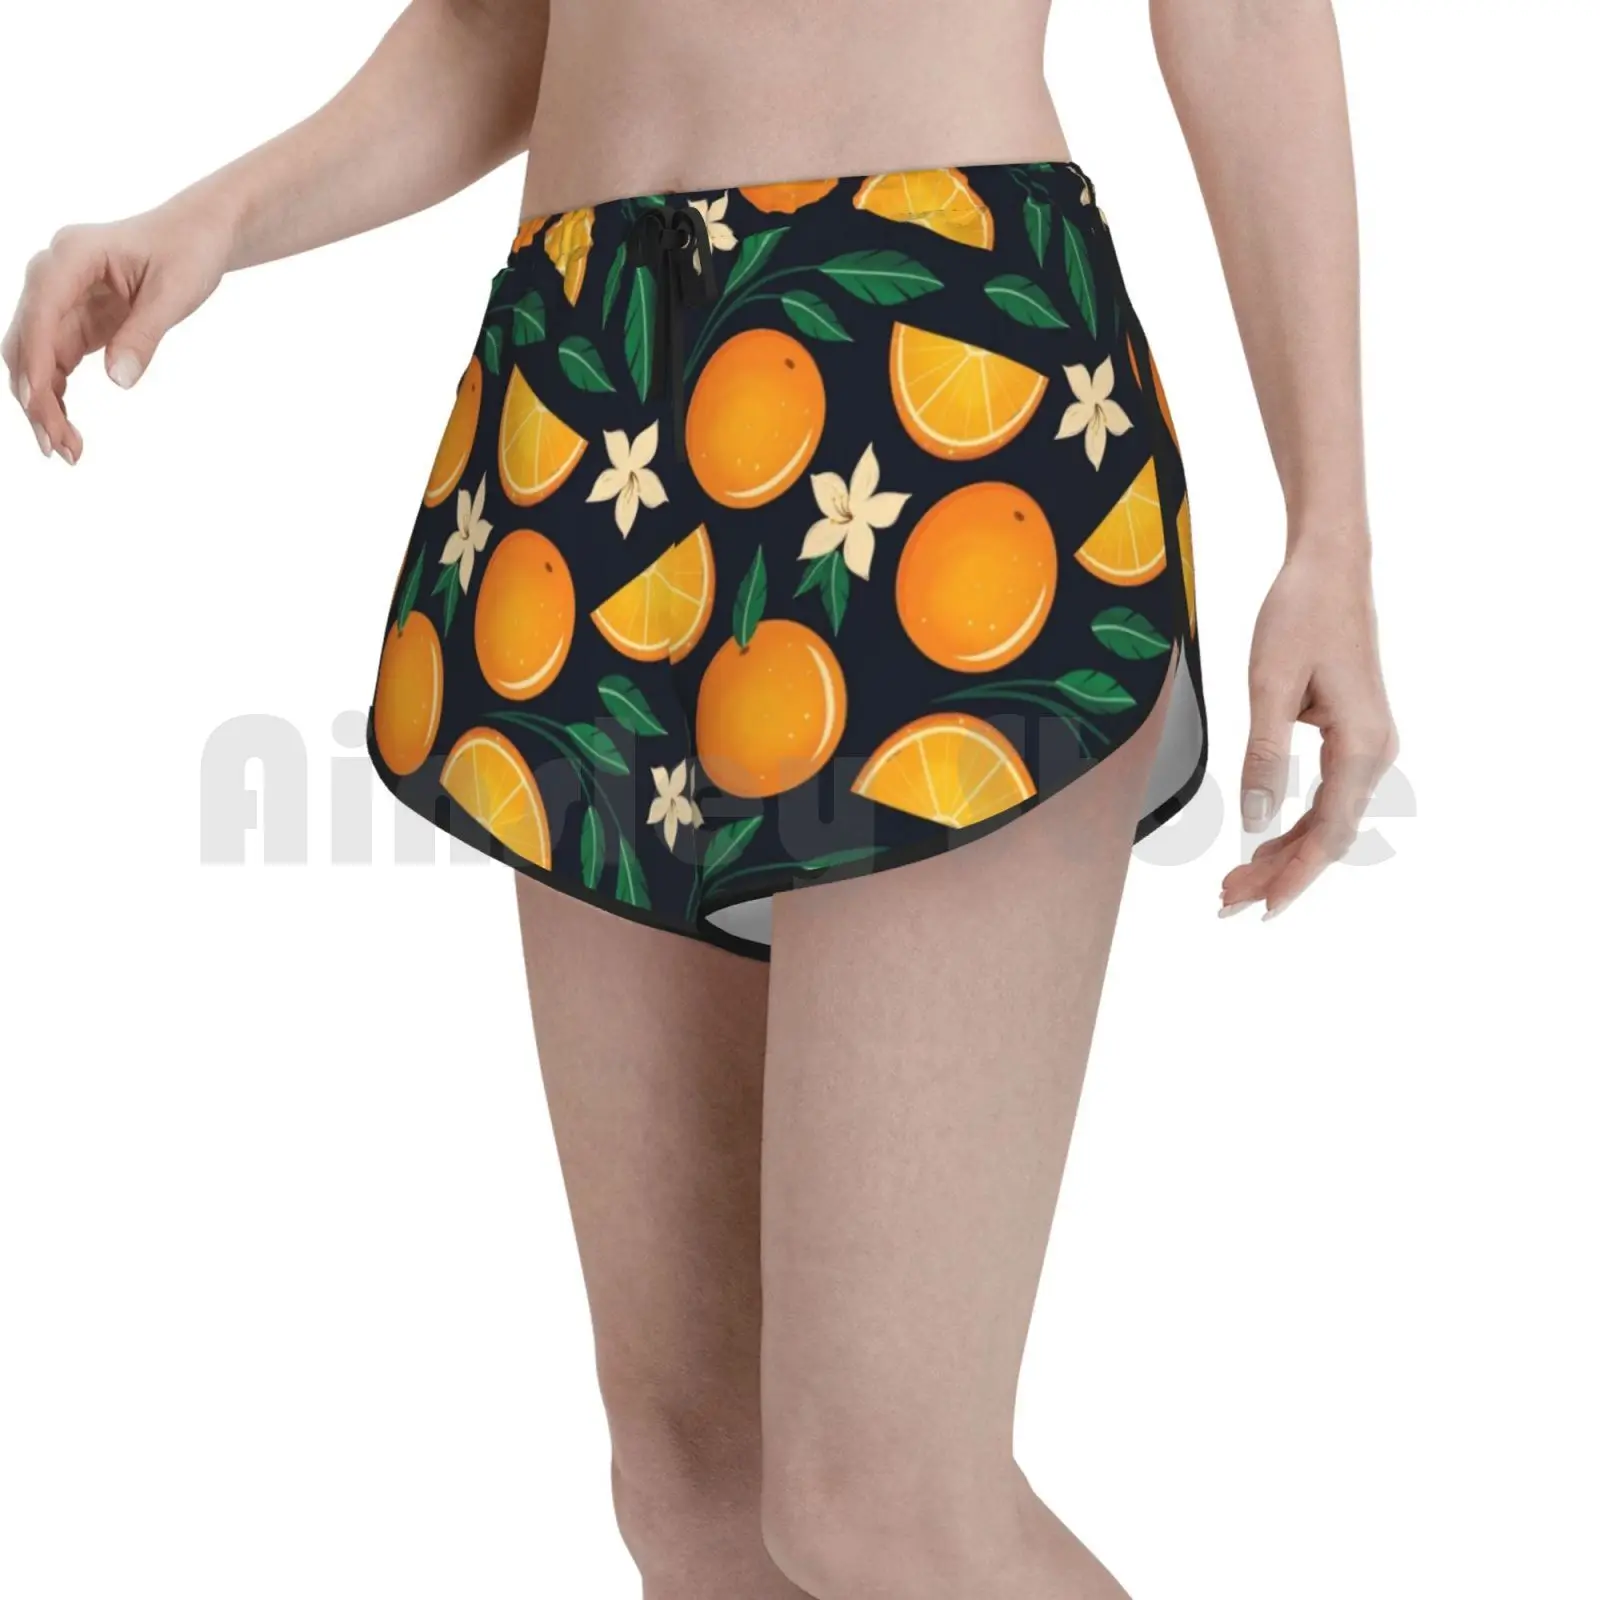 

Оранжевый шаблон плавать шорты женские пляжные шорты оранжевого цвета C рисунком оранжевого цвета цвести цветок с оранжевым цветком